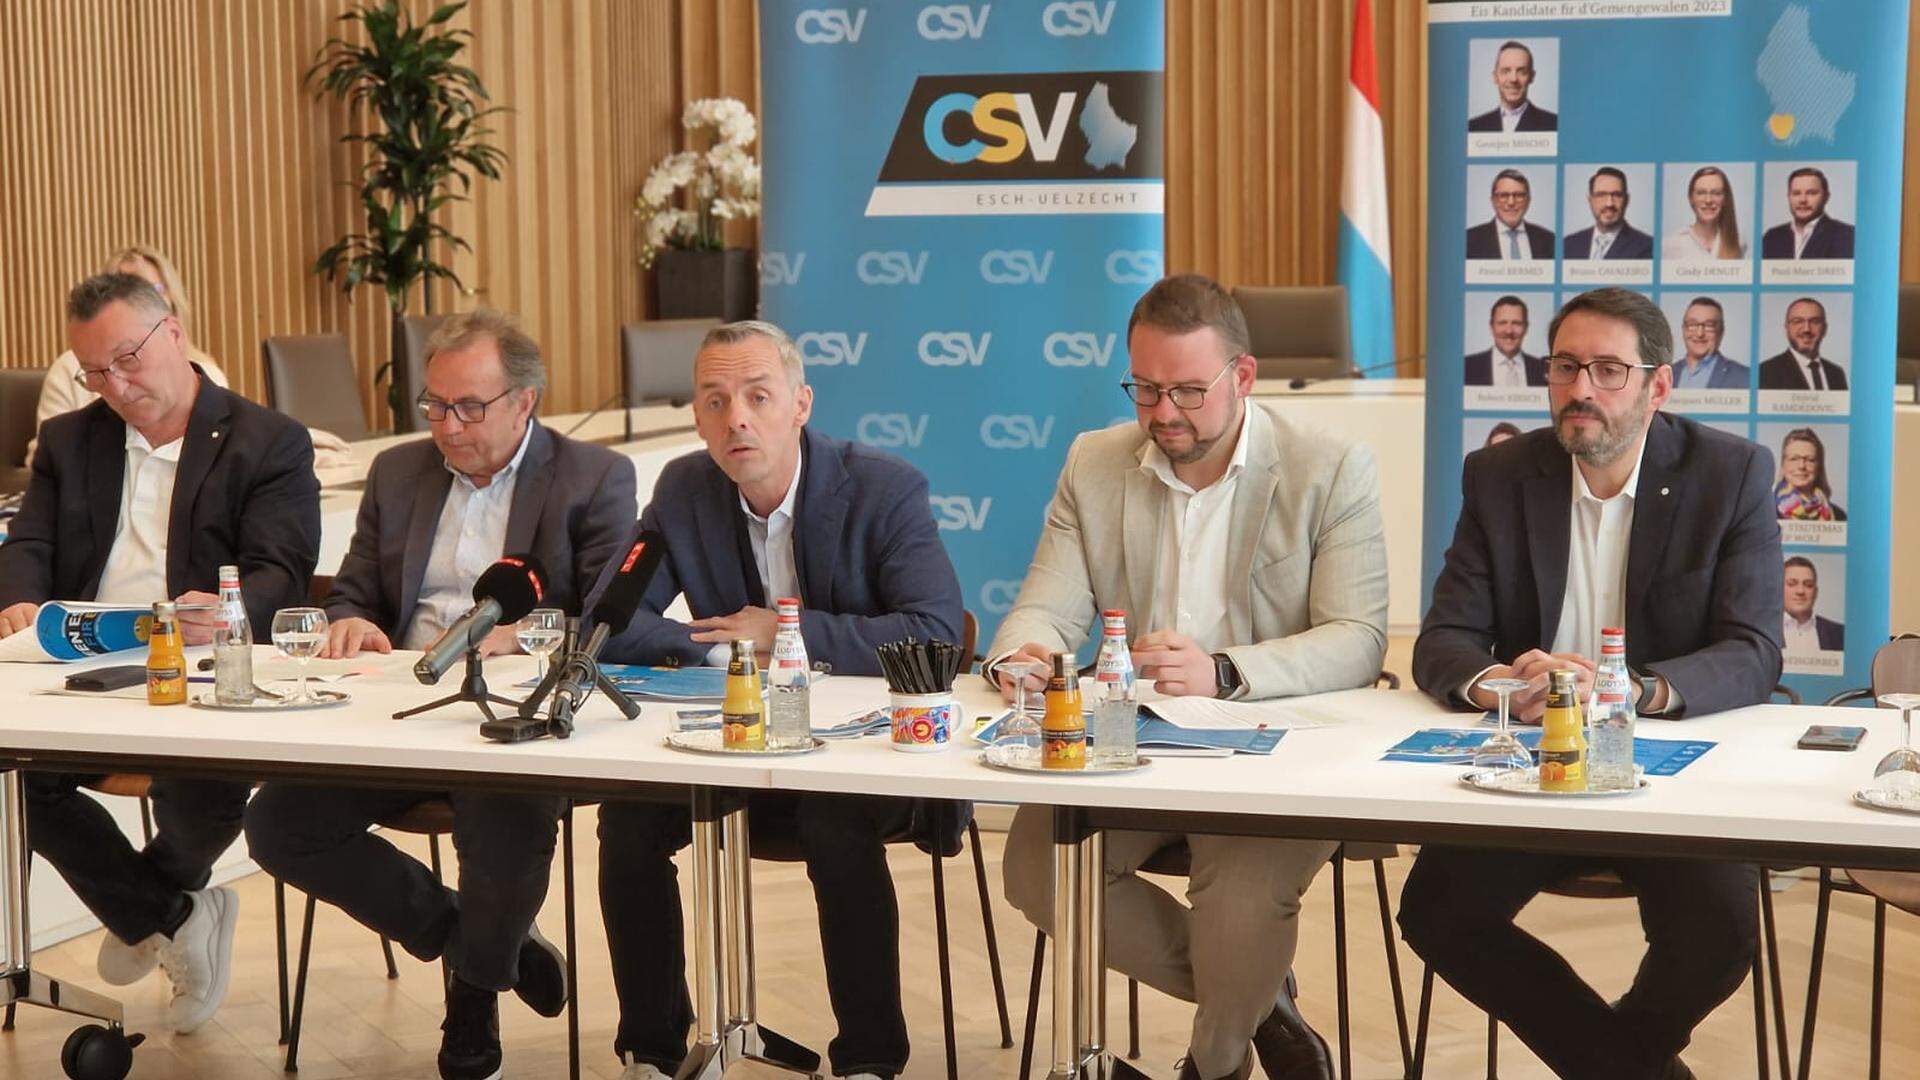 Candidatos do CSV a Esch-sur-Alzette apresentam programa eleitoral.